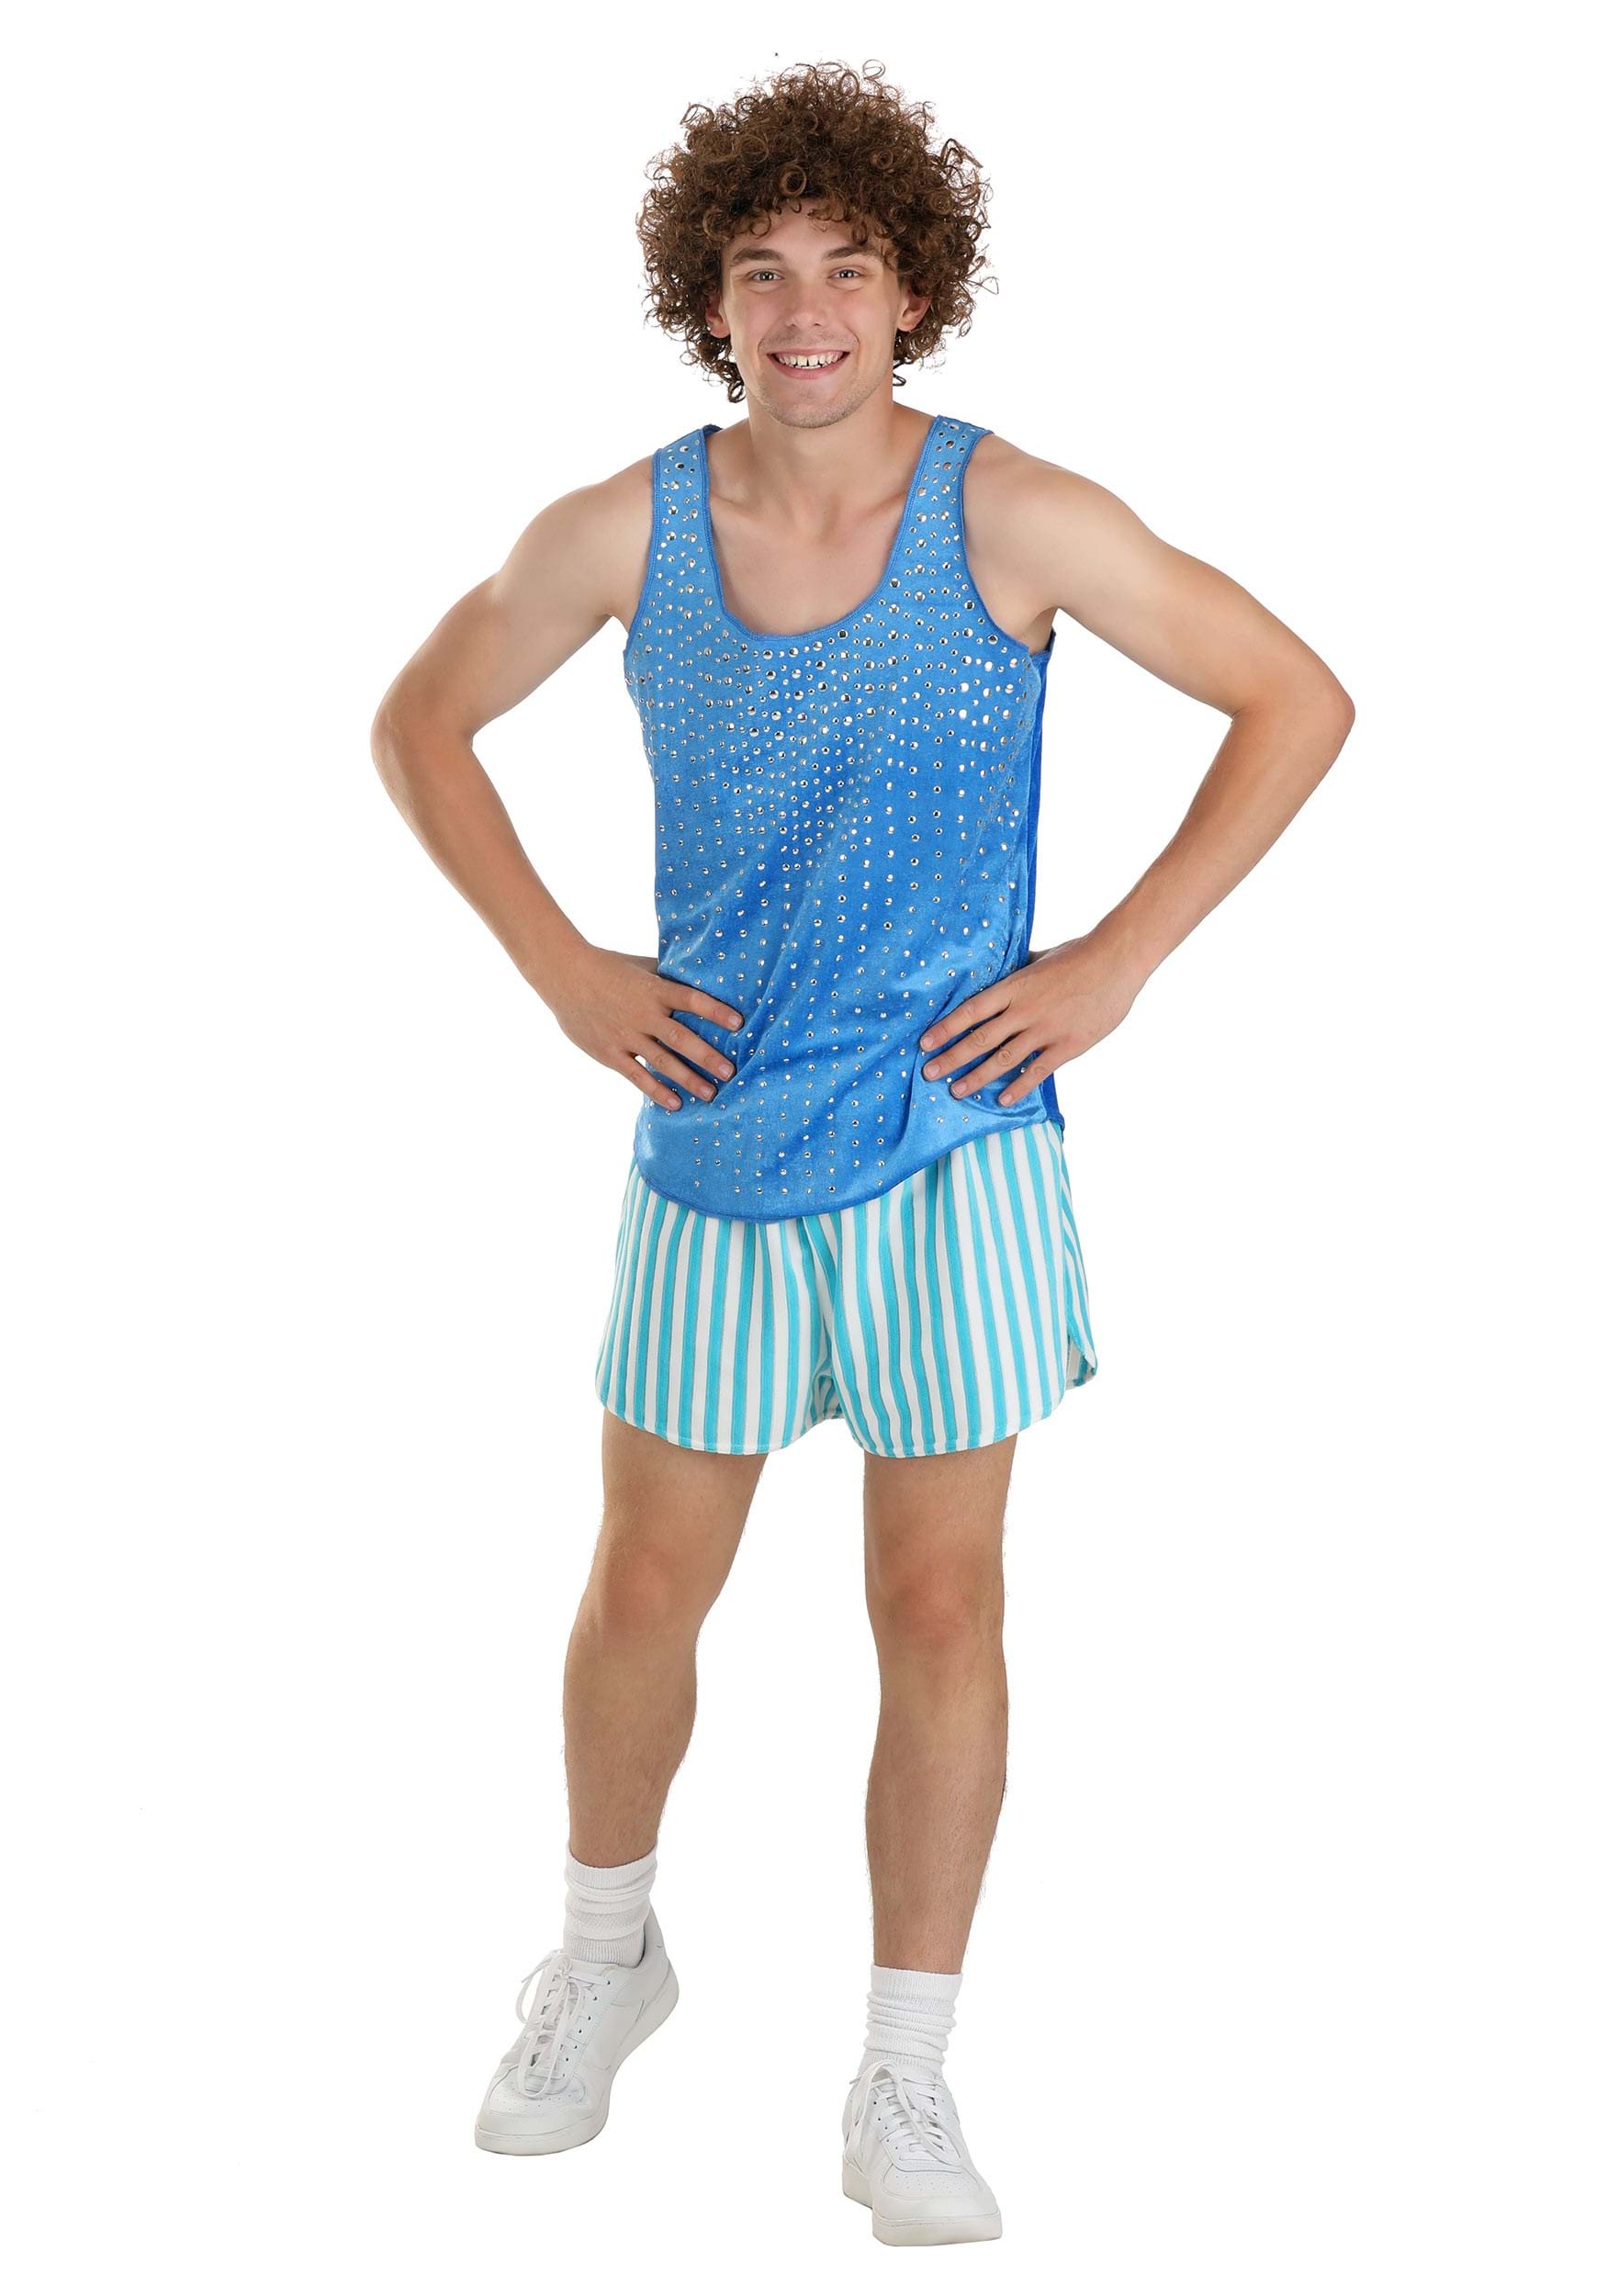 Blue Richard Simmons Costume for Men | Fitness Costume